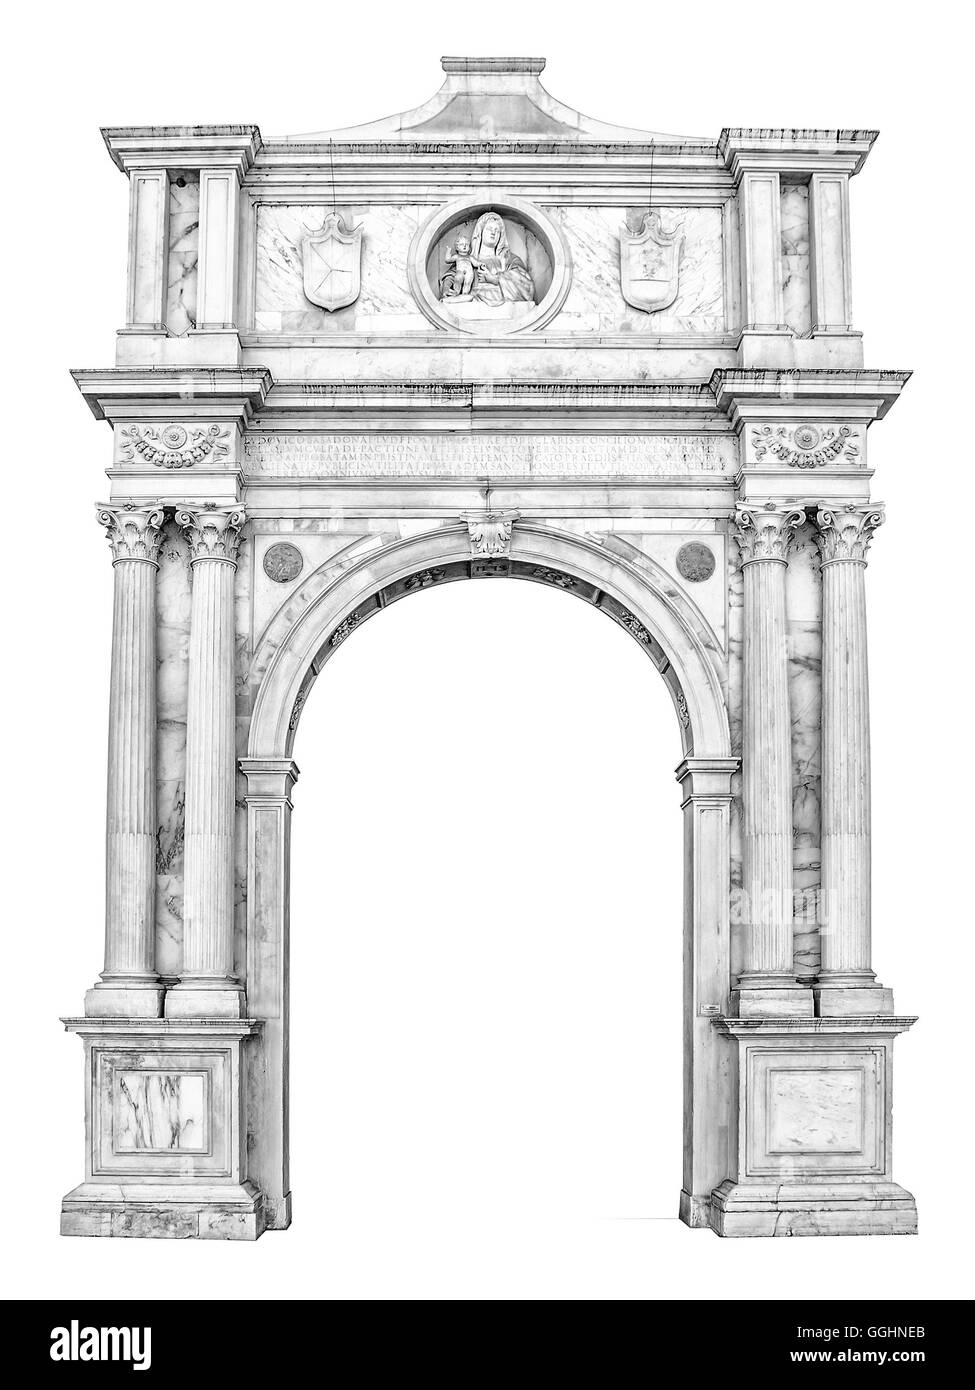 En portail en style gothico-Renaissance utilisable comme cadre ou une bordure. Banque D'Images